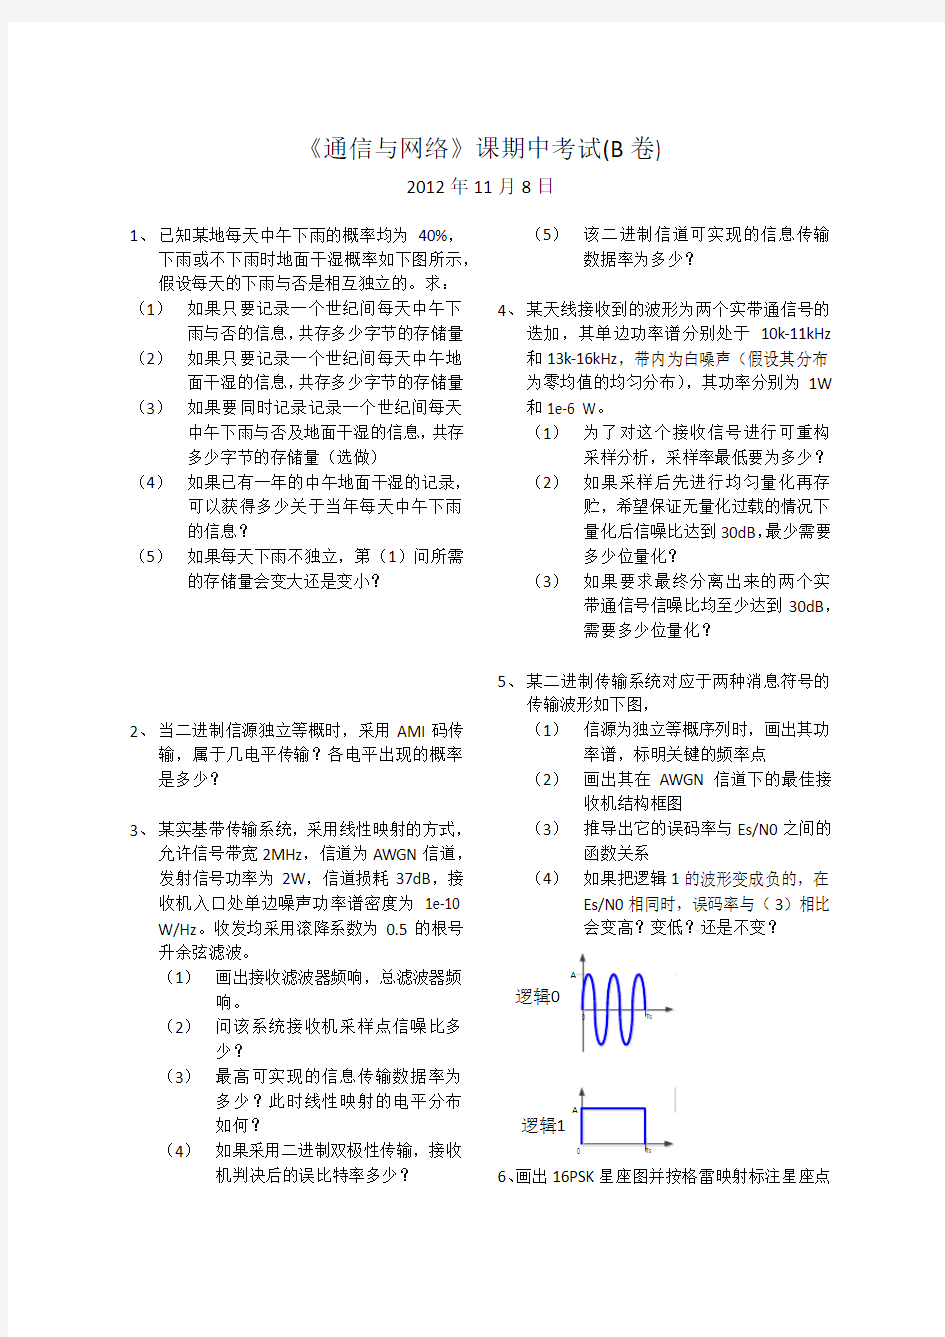 清华大学 通信与网络 2012年期中考试试卷 完全版